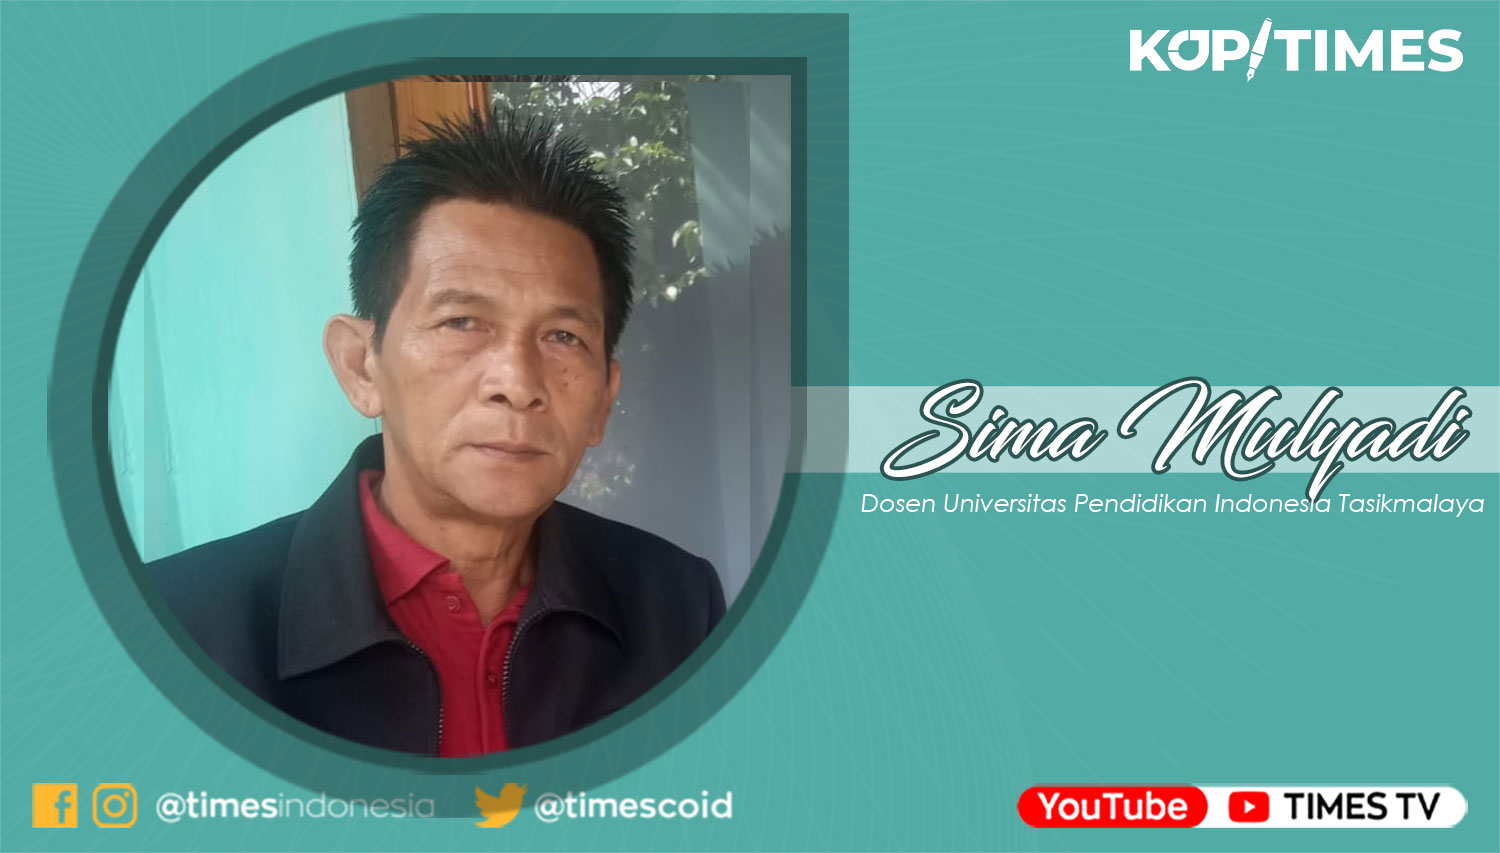 Dr. Sima Mulyadi, MPd, Dosen Program Pendidikan S2 PGSD Universitas Pendidikan Indonesia Tasikmalaya.